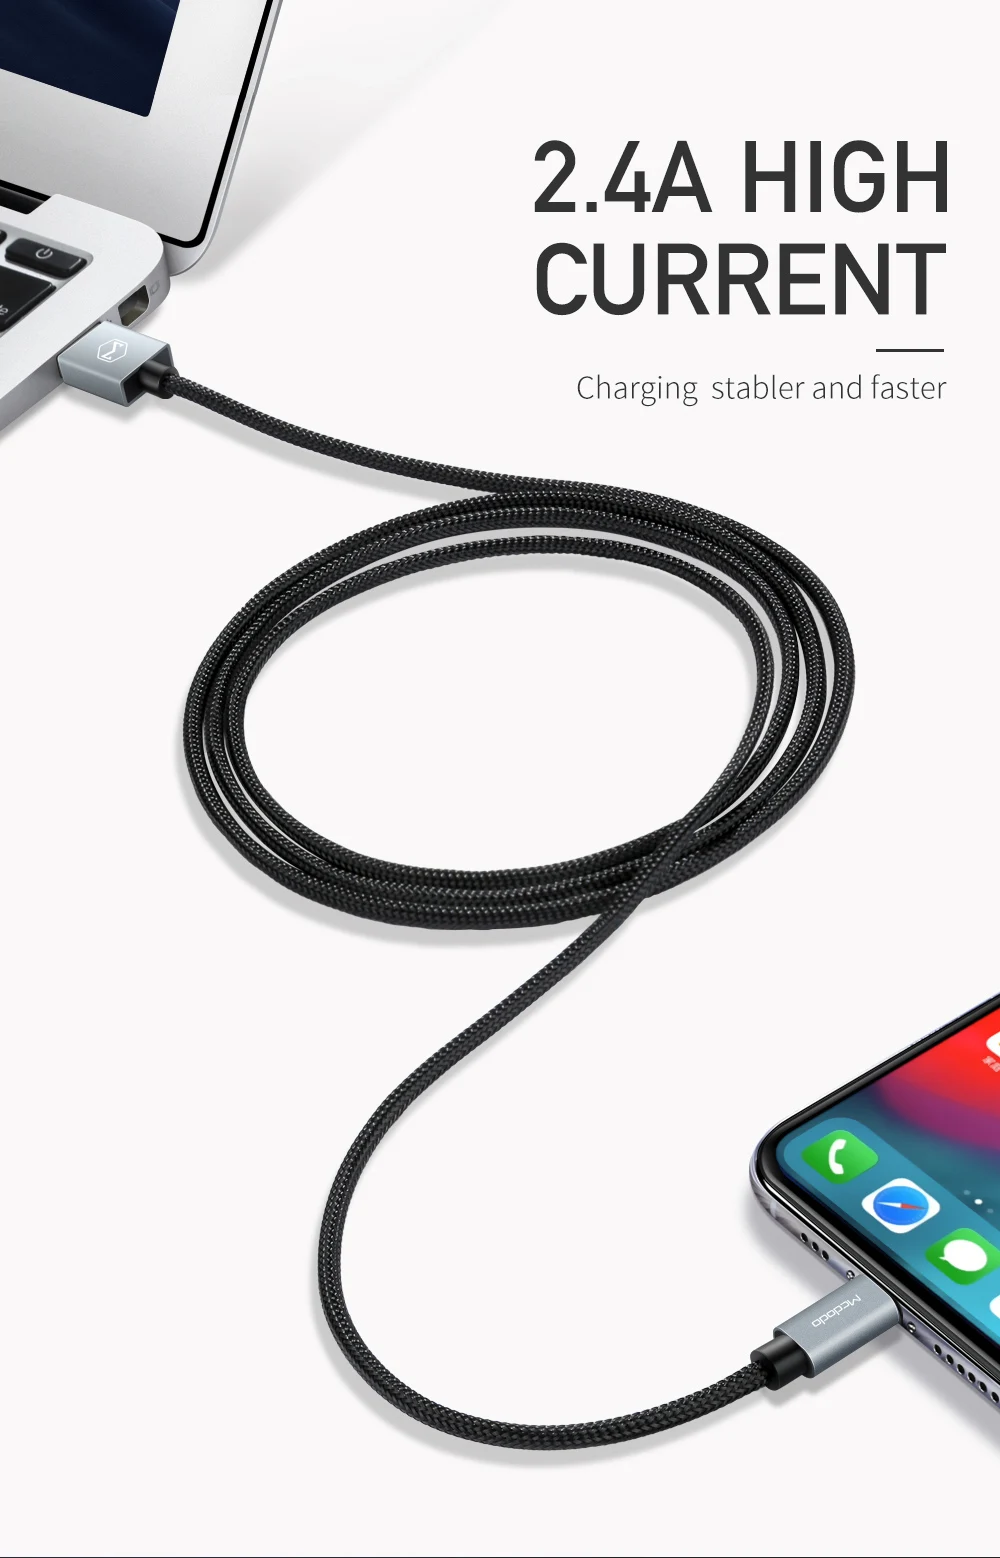 Mcdodo MFI usb-кабель для iPhone Apple iPhone X Xs Max XR 8 7 6 plus 2.4A Быстрый зарядный кабель мобильного телефона Зарядное устройство кабель для передачи данных